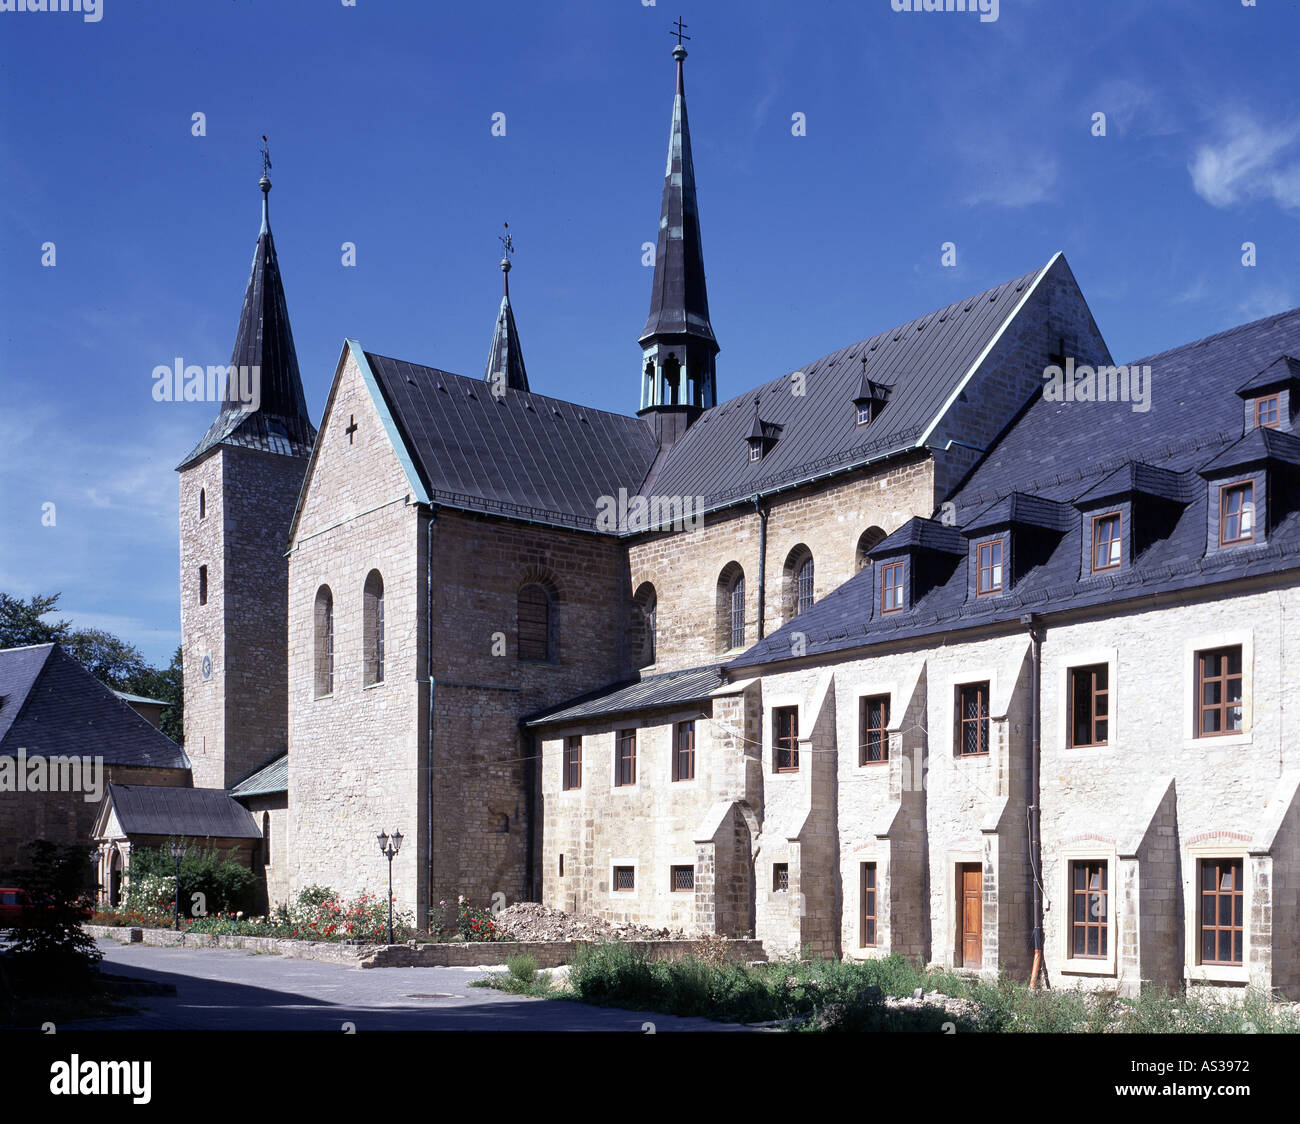 Huysburg bei Halberstadt, Klosterkirche, Blick von Südosten Banque D'Images